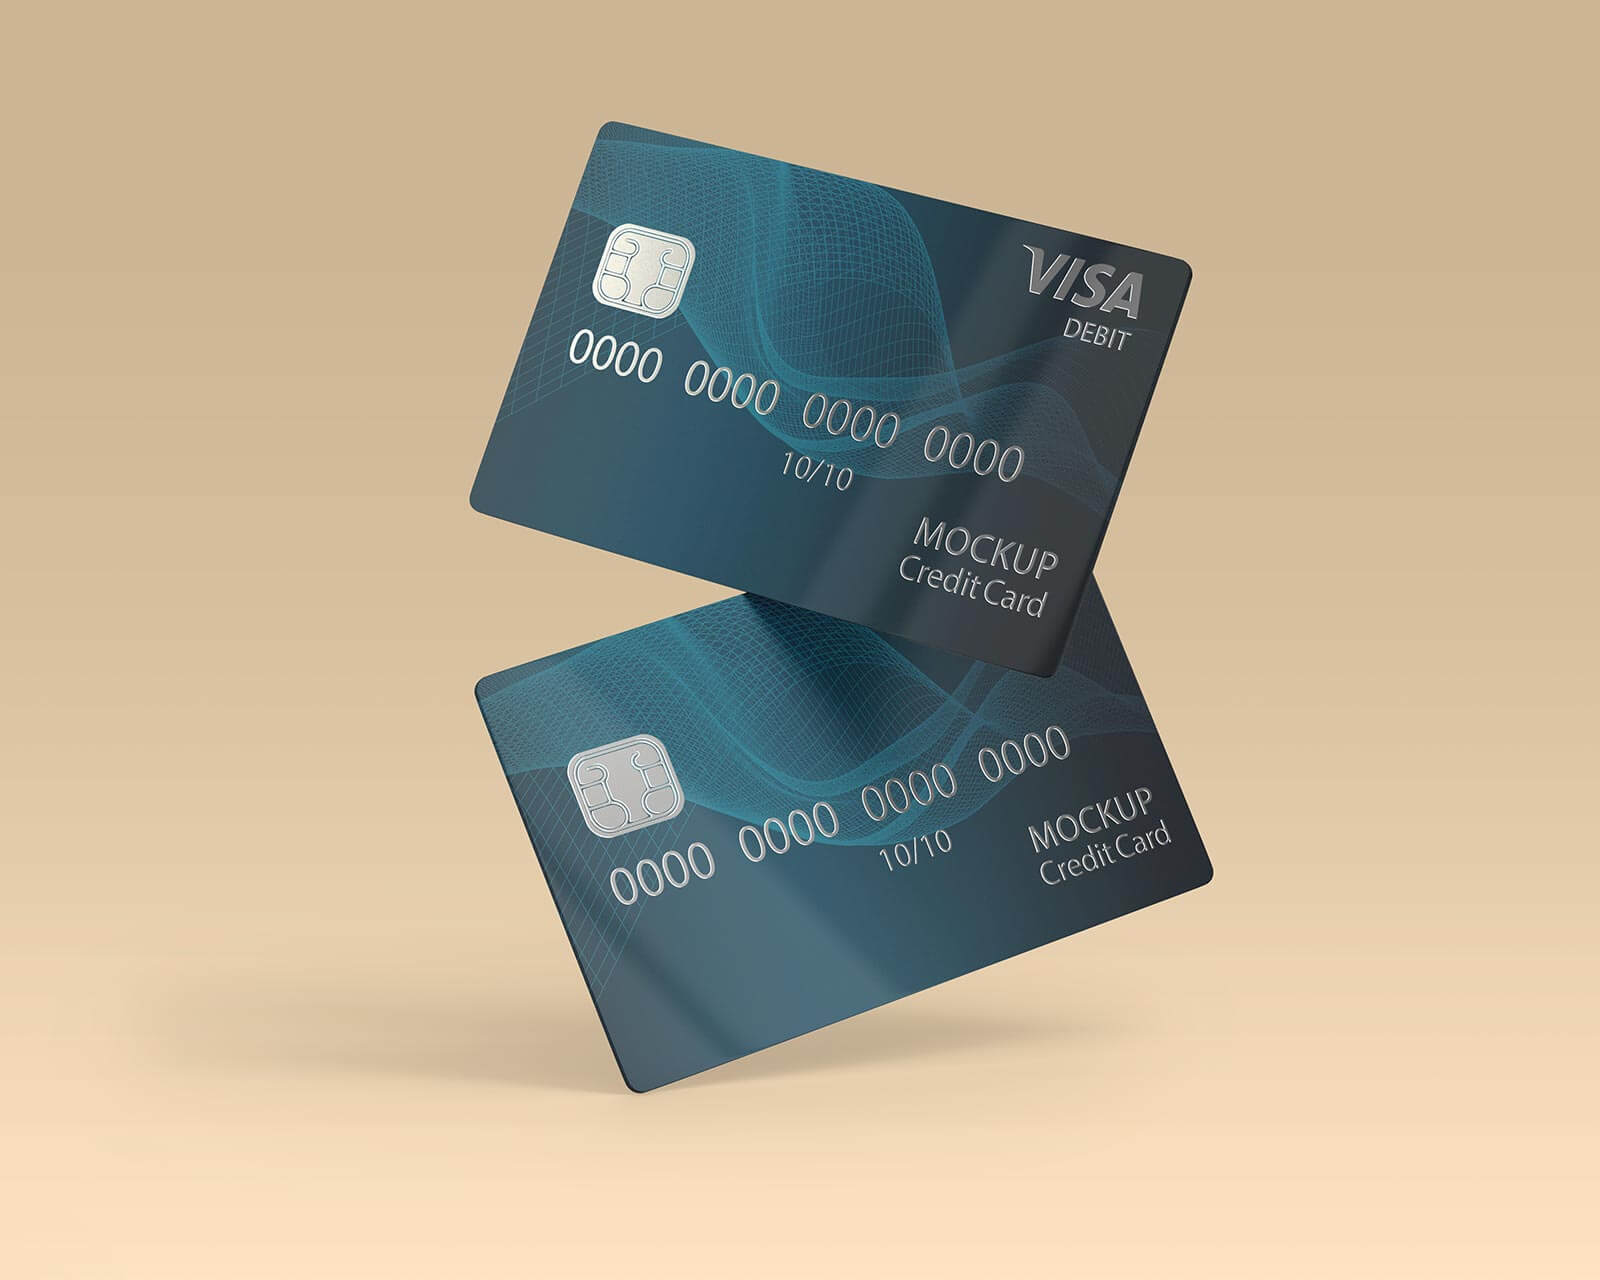 Conjunto de maquetas de tarjetas bancarias de crédito / débito